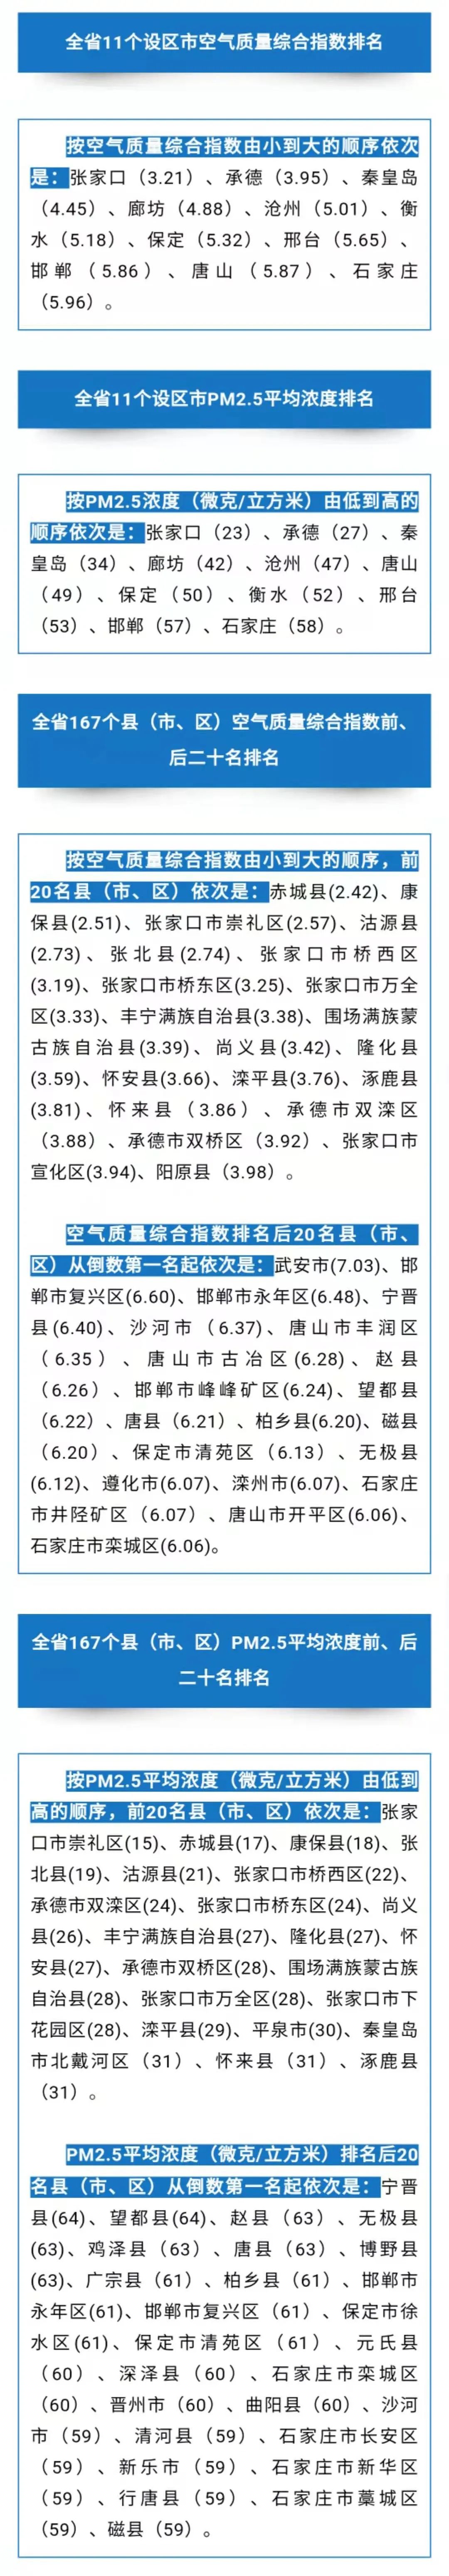 河北省公布2020年全省环境空气质量排名